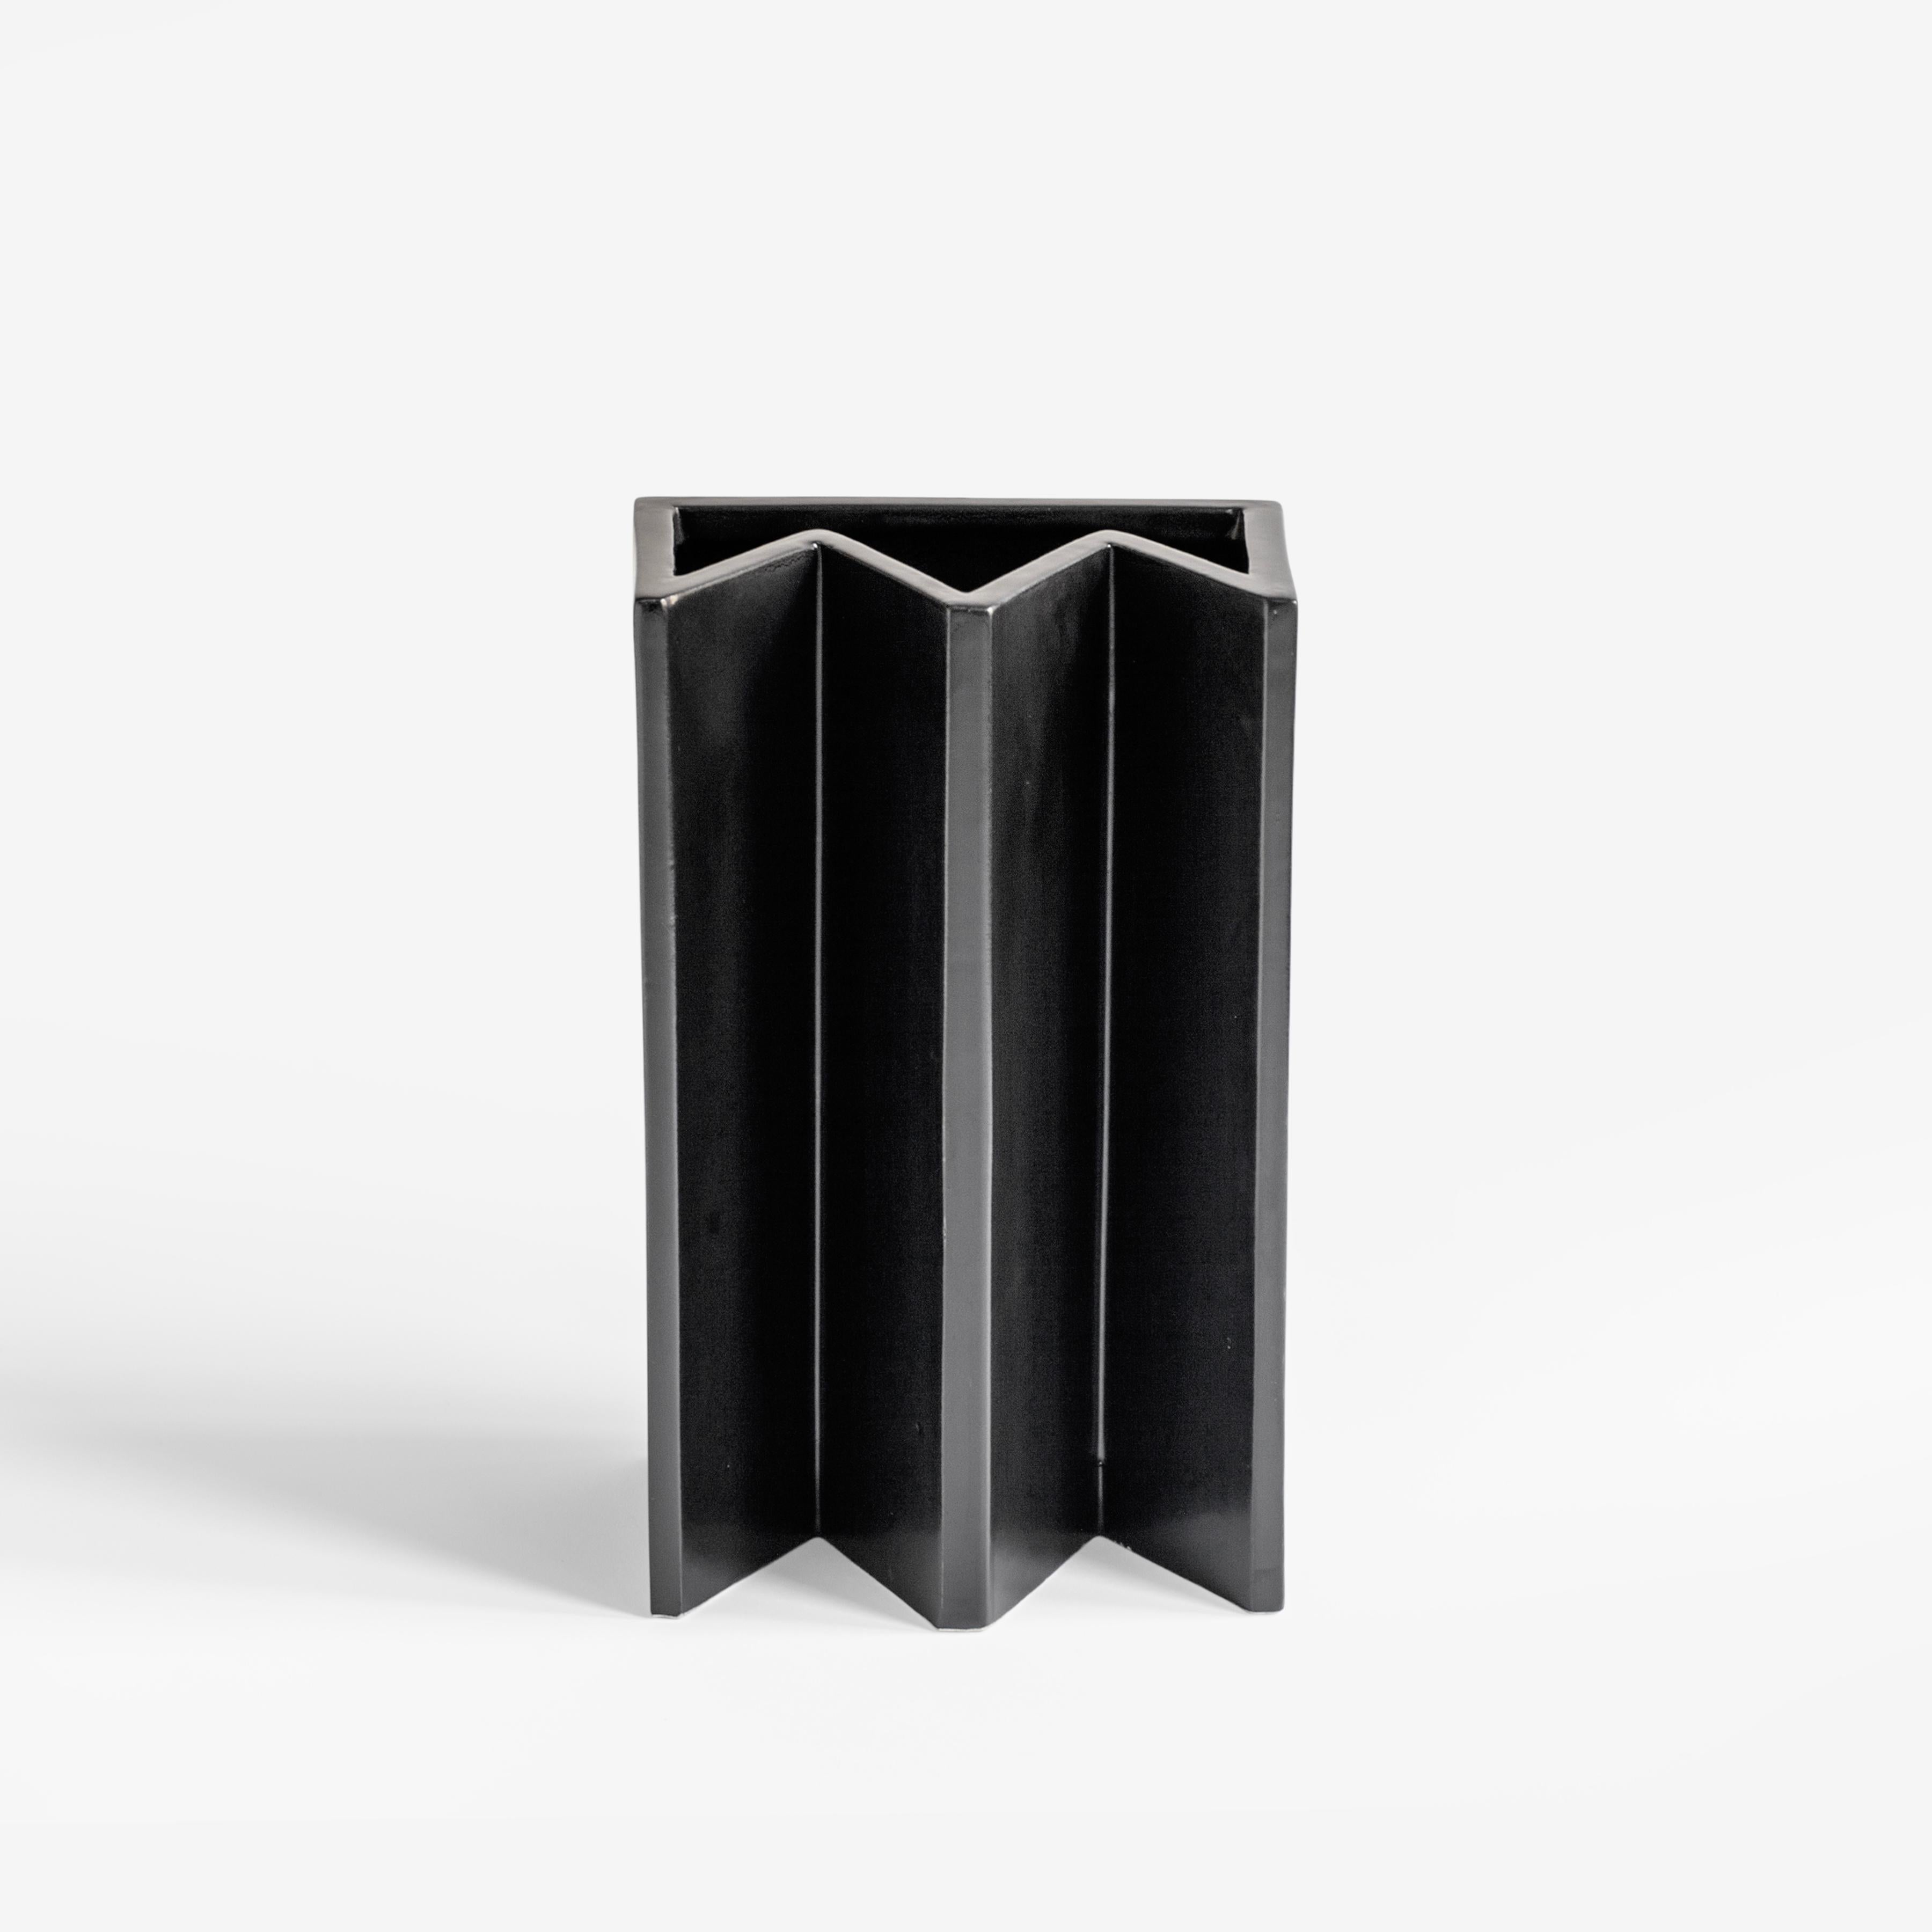 Die minimalistische und verspielte Vase aus gegossener Keramik mit matter schwarzer Glasur wird in Mailand handgefertigt.
Als Teil der von der Künstlerin Sara Khamisi entworfenen Kollektion 